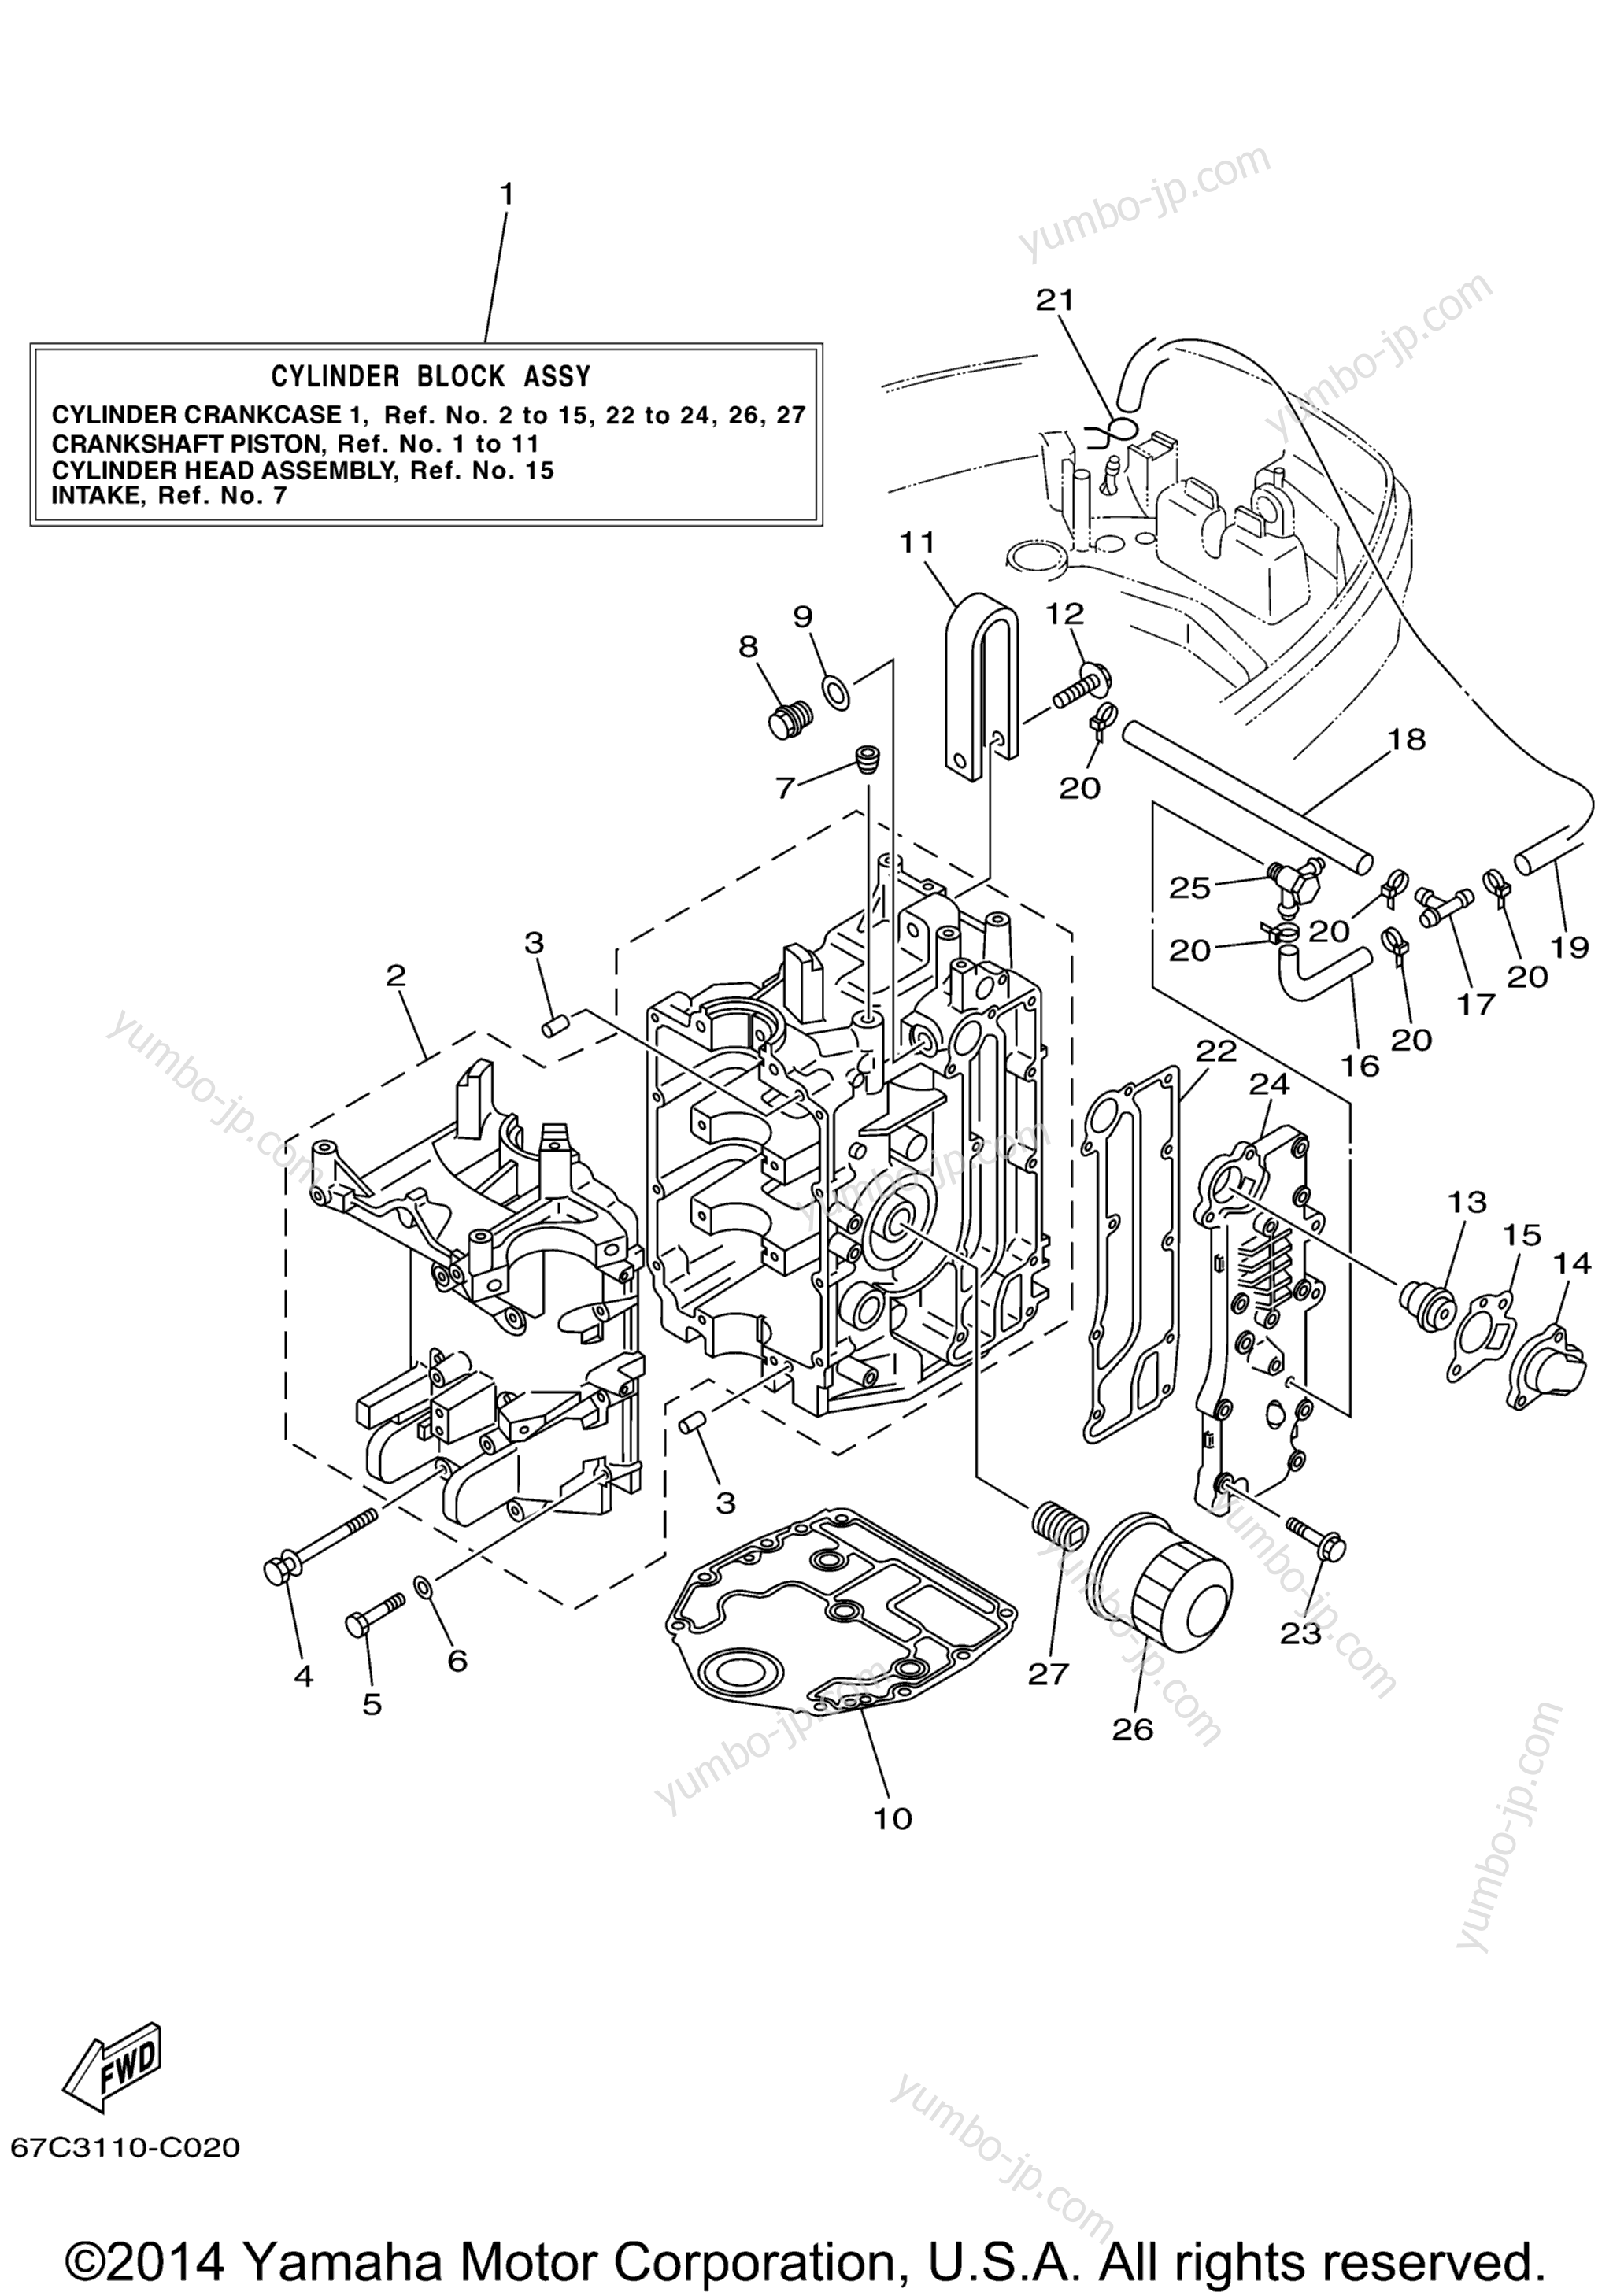 Cylinder Crankcase 1 для лодочных моторов YAMAHA F40TLRD_MSHD_MLHD_MJHD_ELRD (F40TLRD) 2005 г.